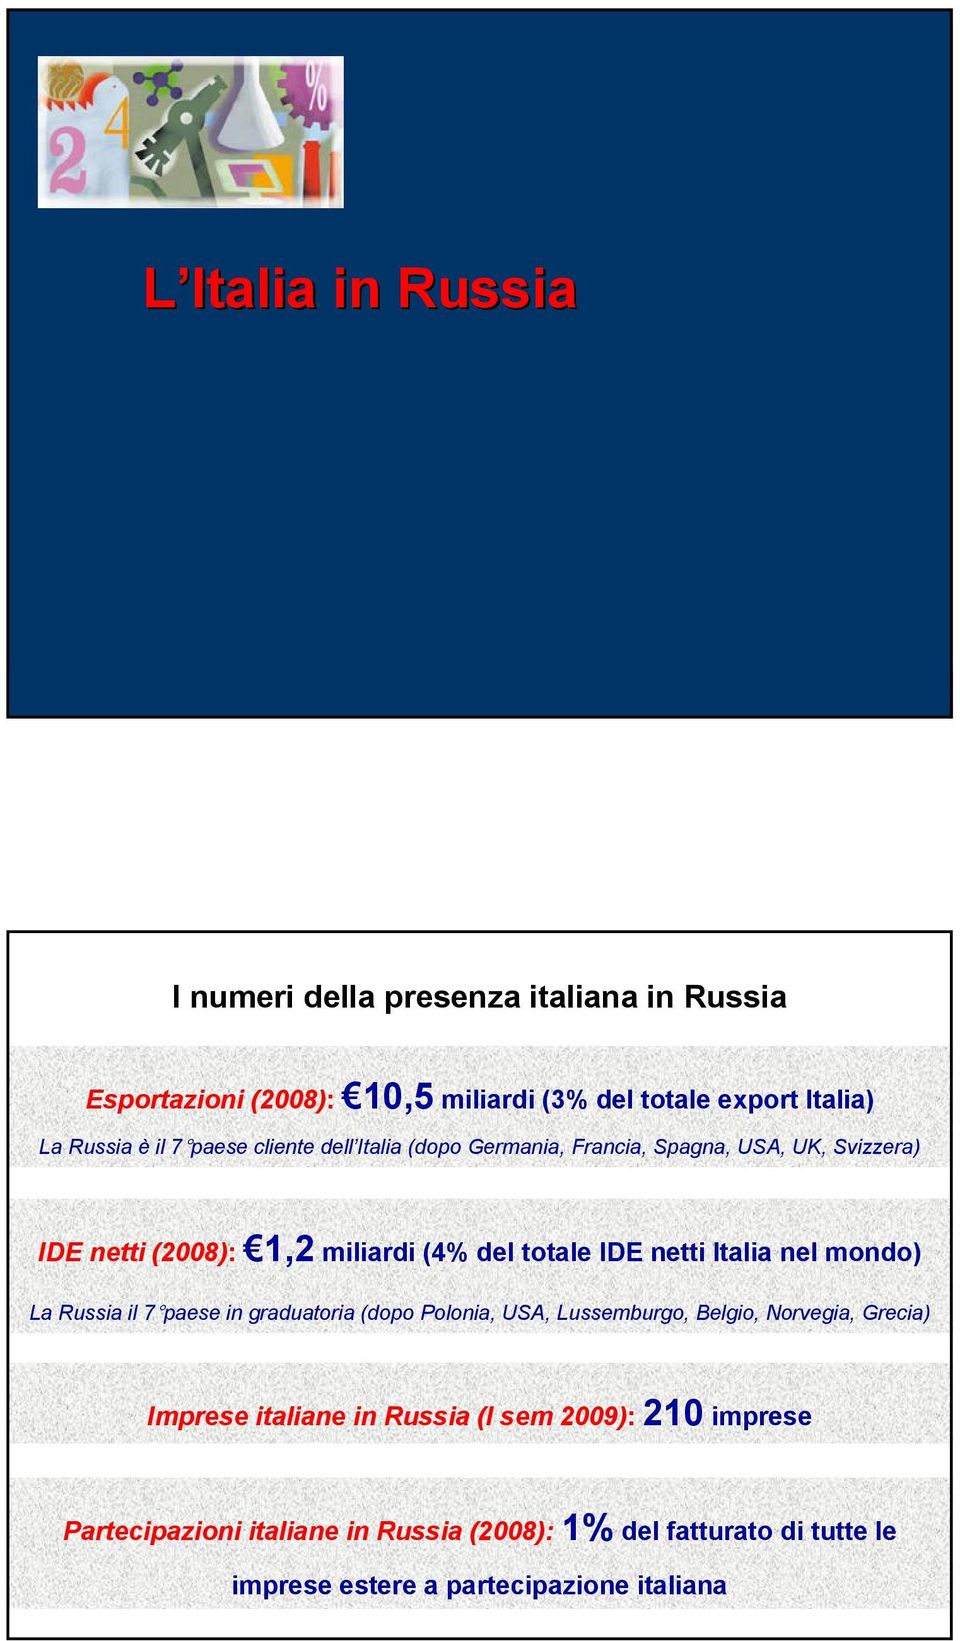 Italia nel mondo) La Russia il 7 paese in graduatoria (dopo Polonia, USA, Lussemburgo, Belgio, Norvegia, Grecia) Imprese italiane in